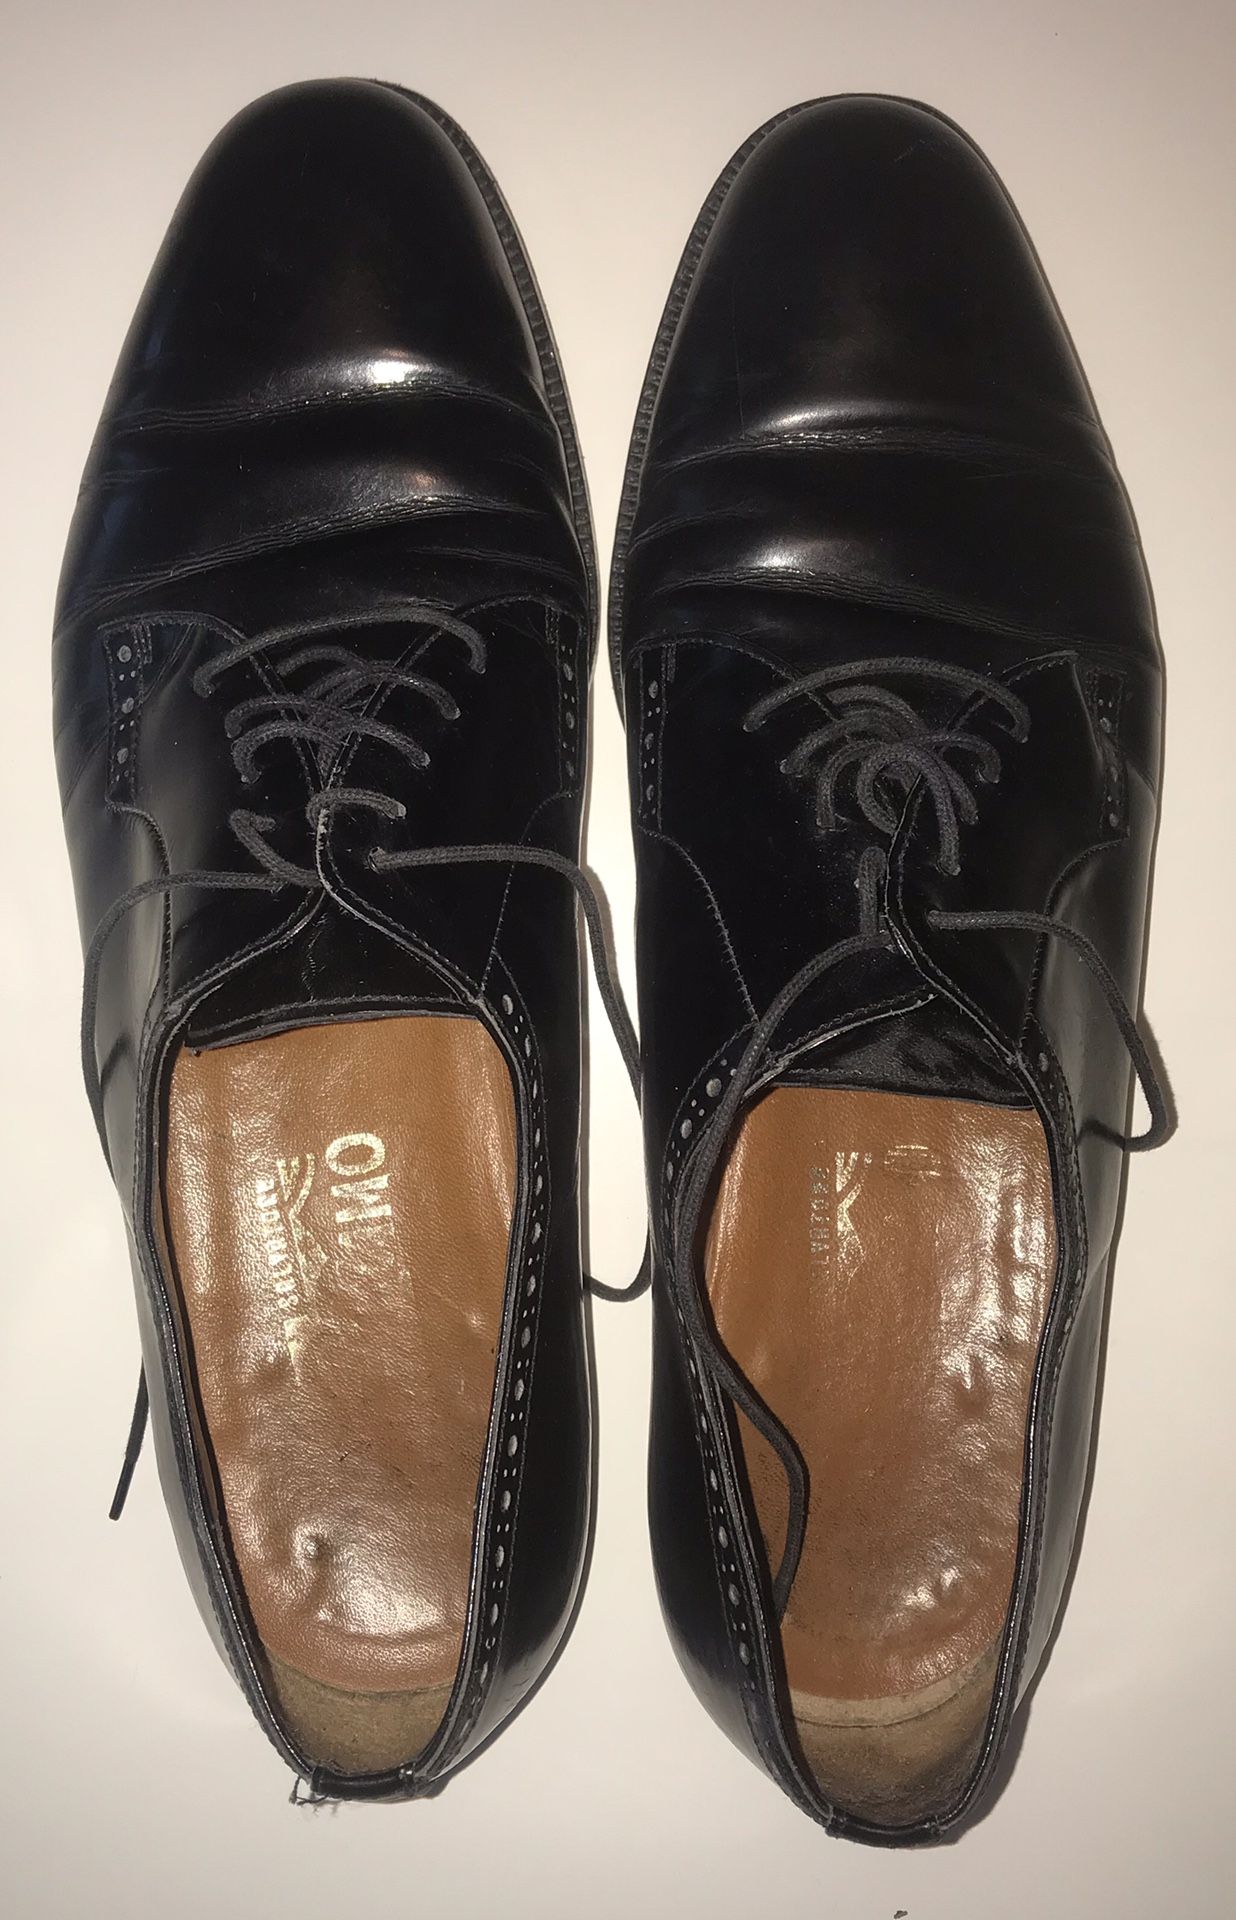 Men’s size 9 Ferragamo shoes